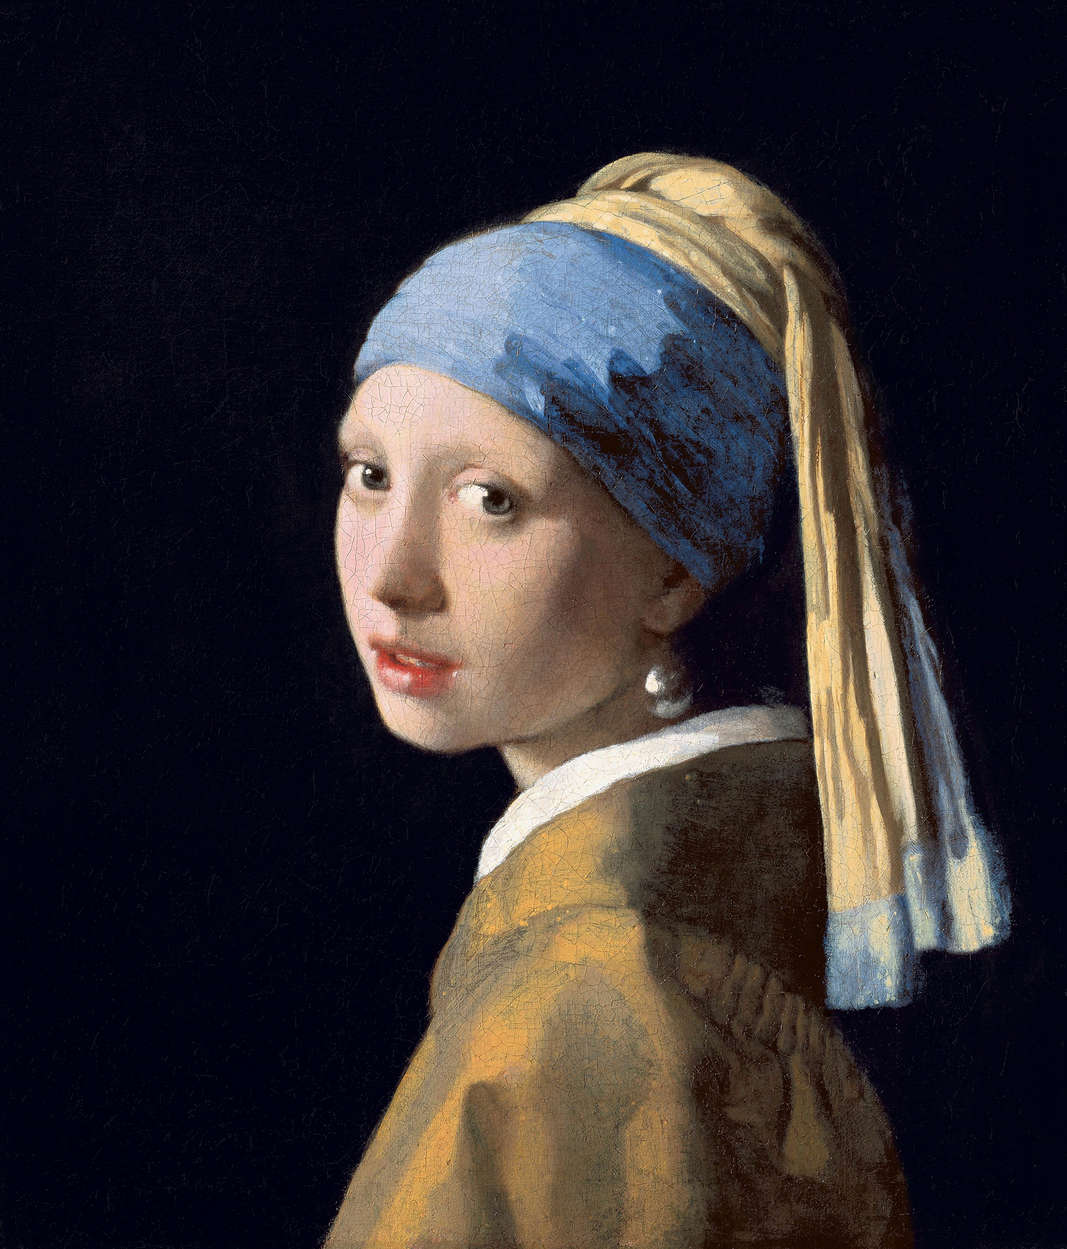             Fototapete "Das Mädchen mit dem Perlenohrring" von Jan Vermeer
        